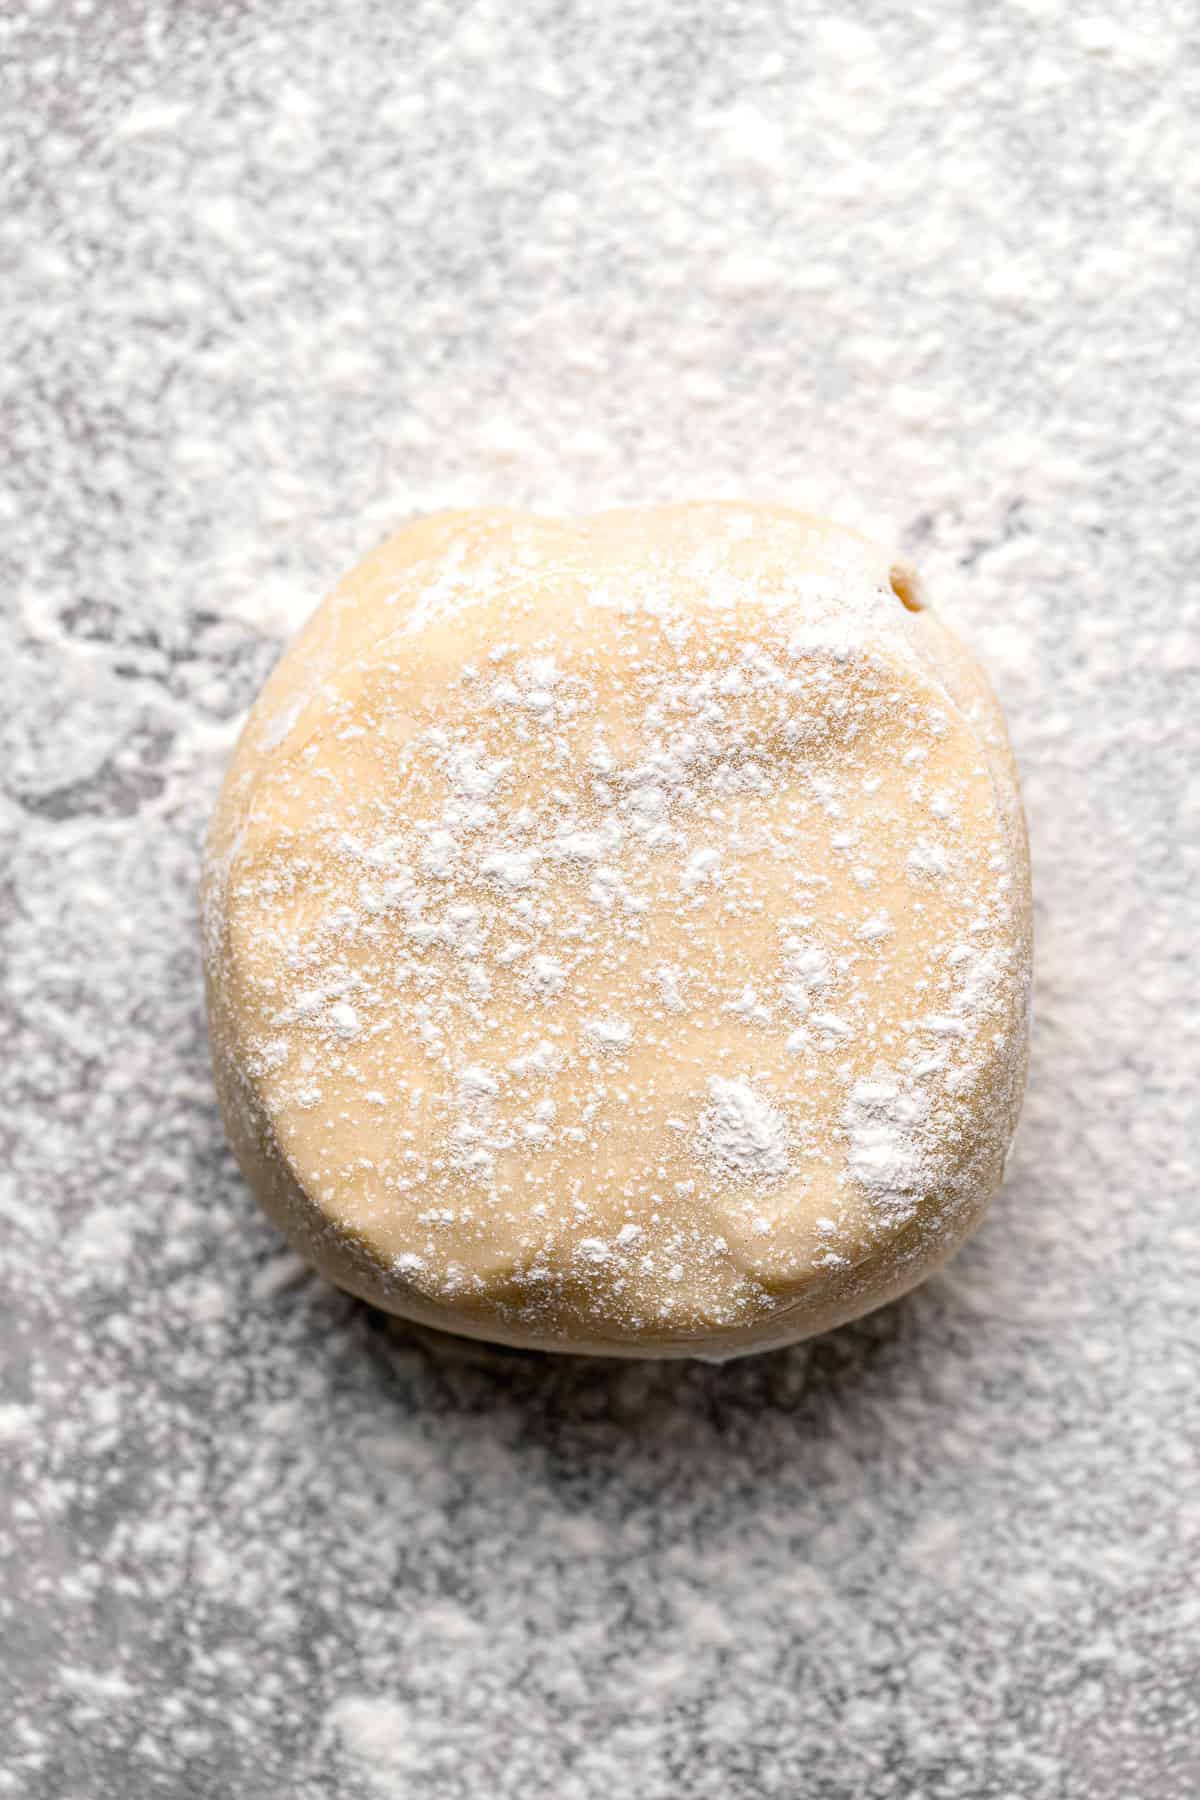 pie dough on floured surface.